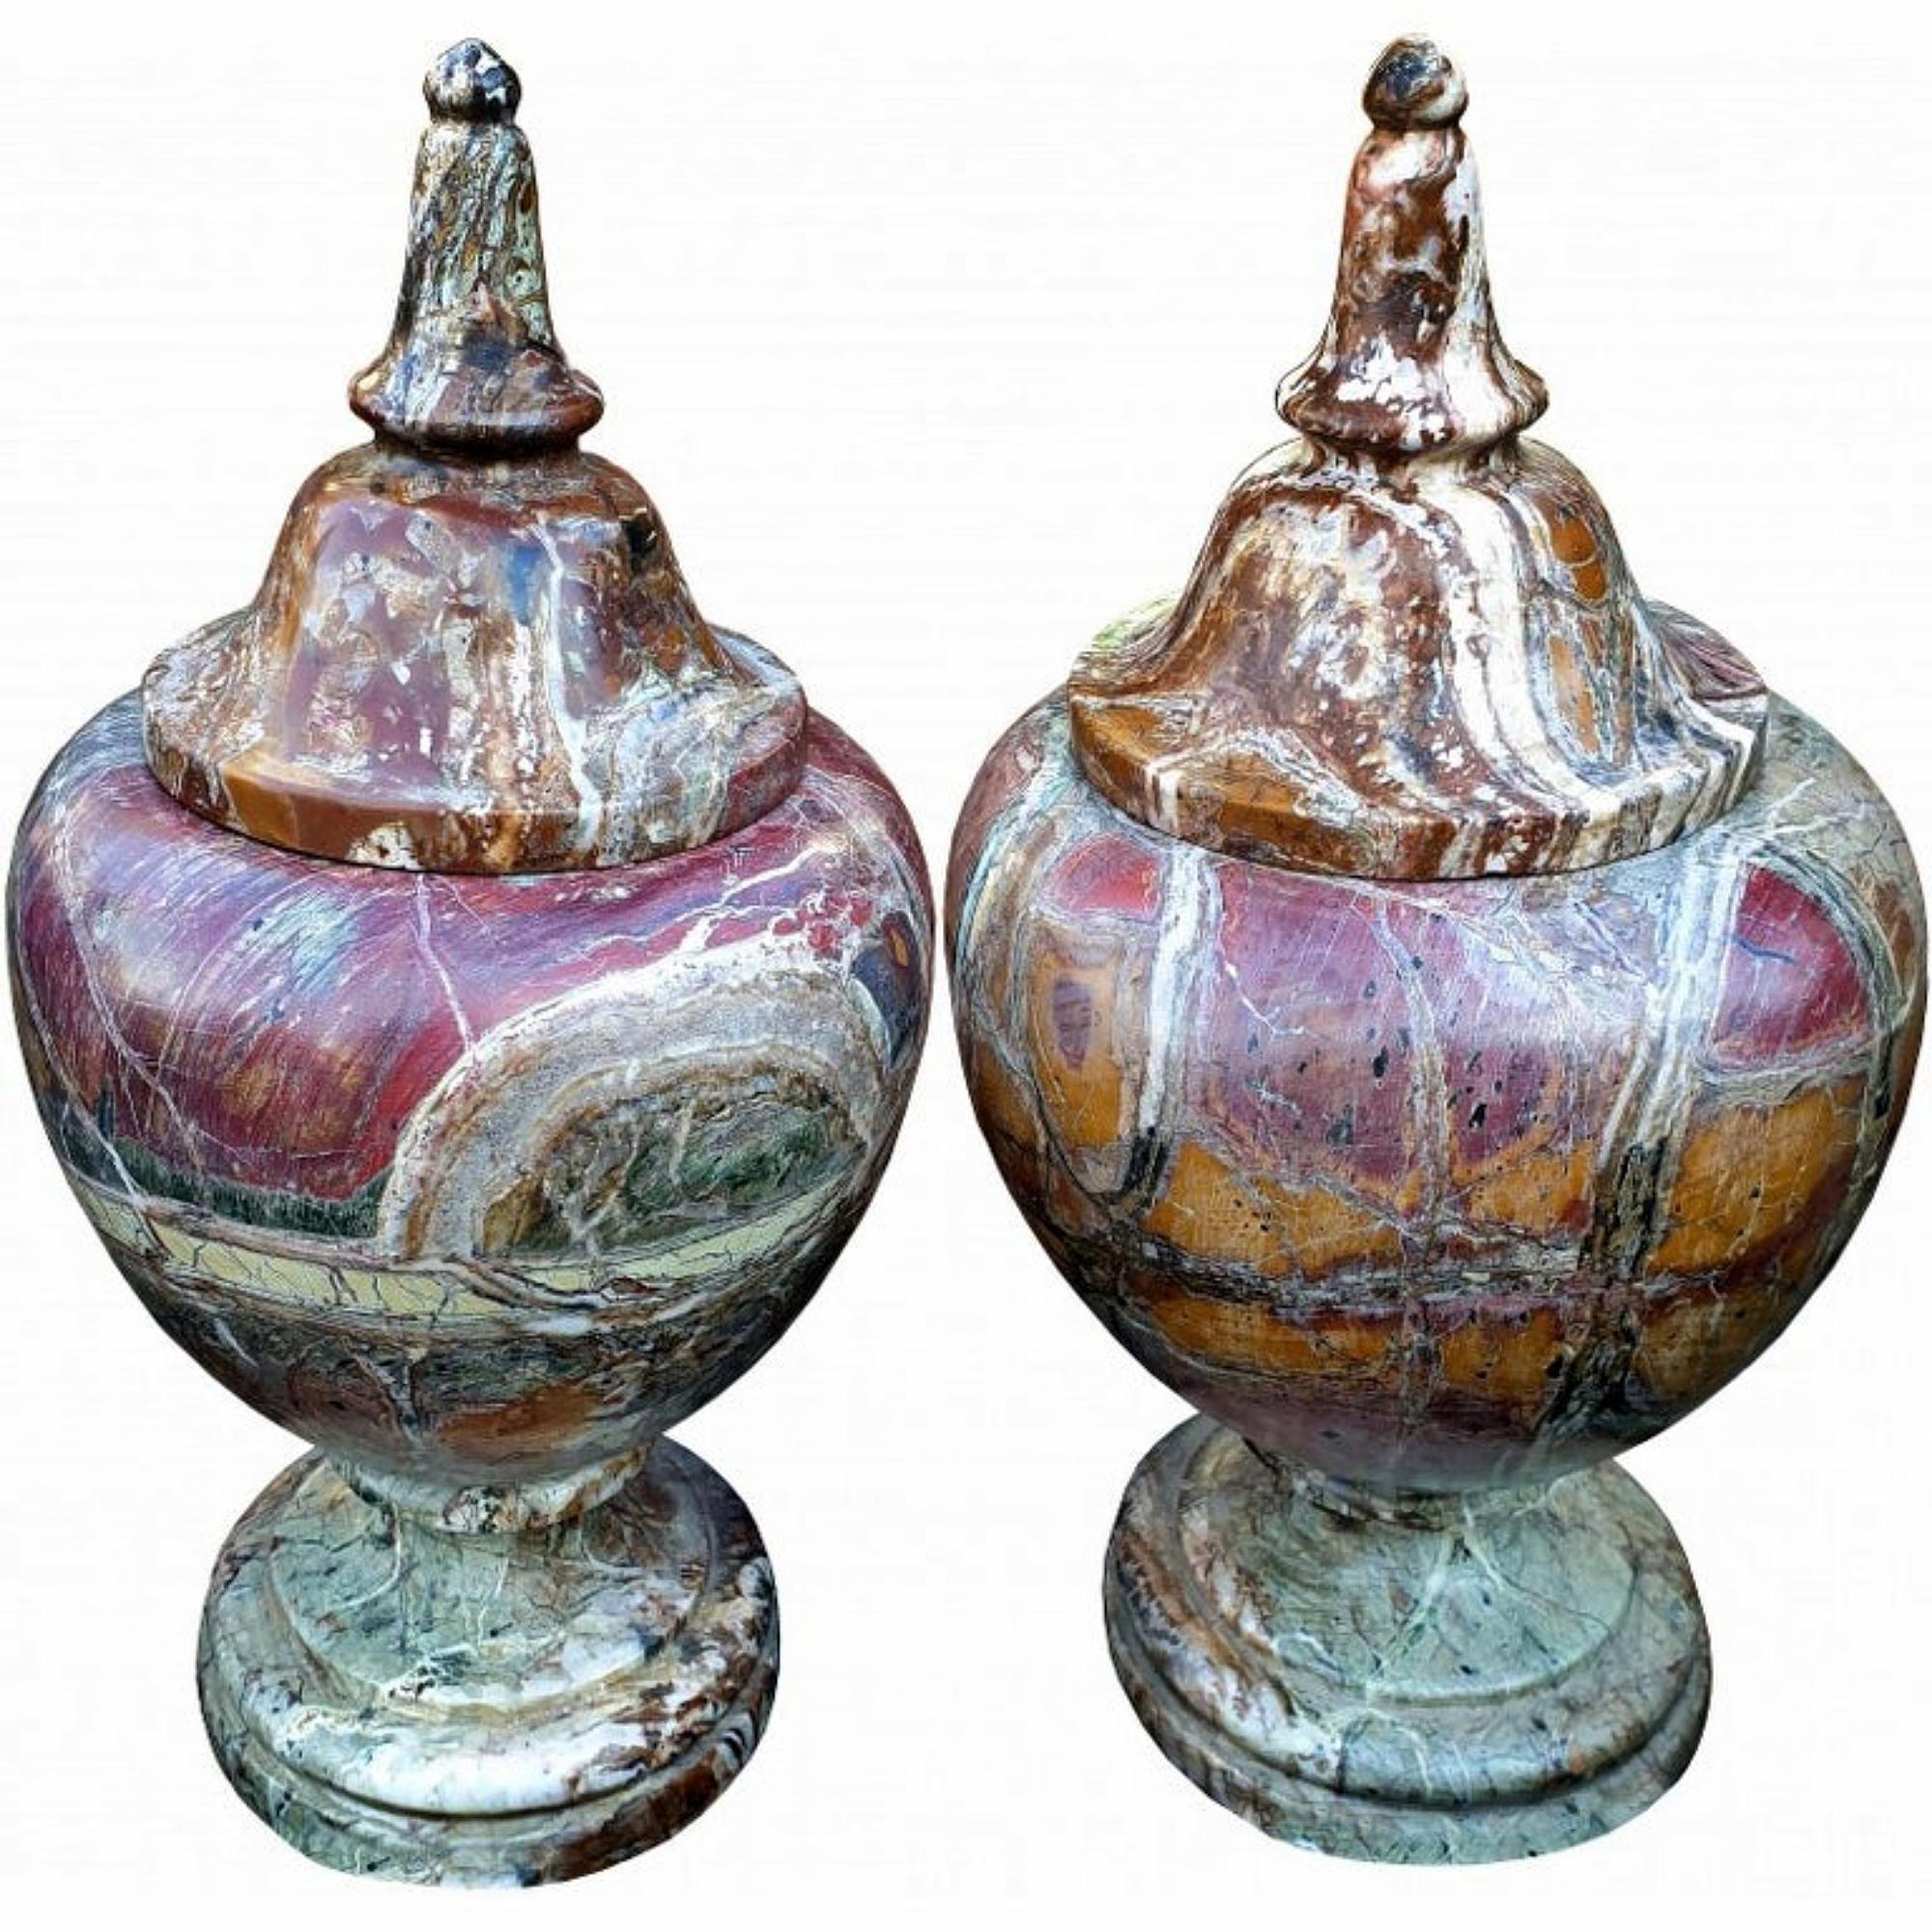 Erstaunliches Paar gedrehter Vasen aus italienischem Diaspro-Rosso-Marmor Anfang des 20.
Höhe 32 cm
Durchmesser 16 cm
Gewicht 20 kg
Künstler / Designer / Architekt Lorenzo Bertozzi
MATERIAL Diaspro Rosso-Marmor.